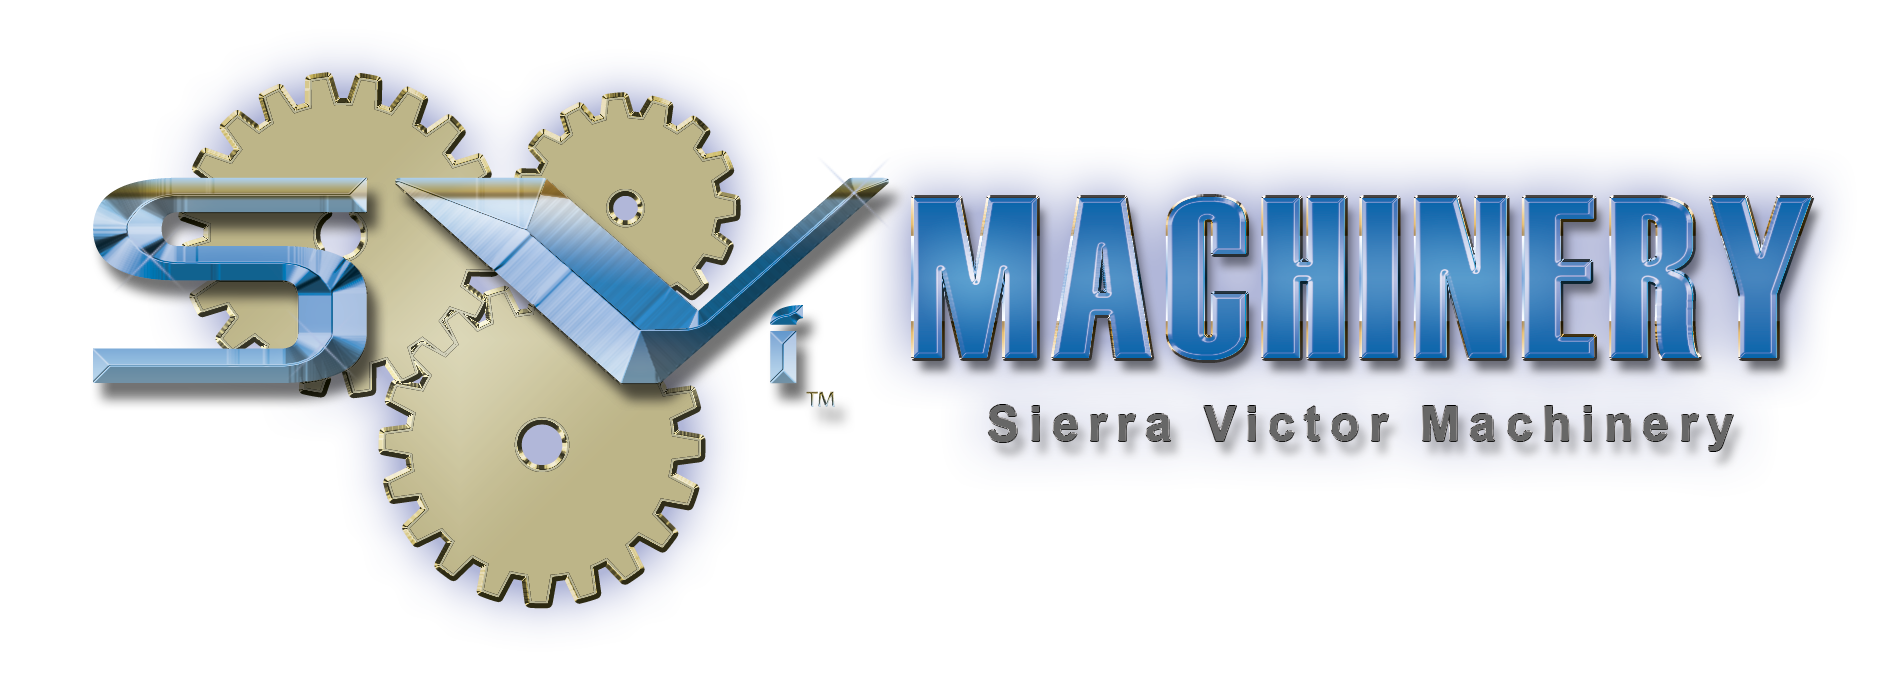 Sierra Victor Industries sells metal working machines